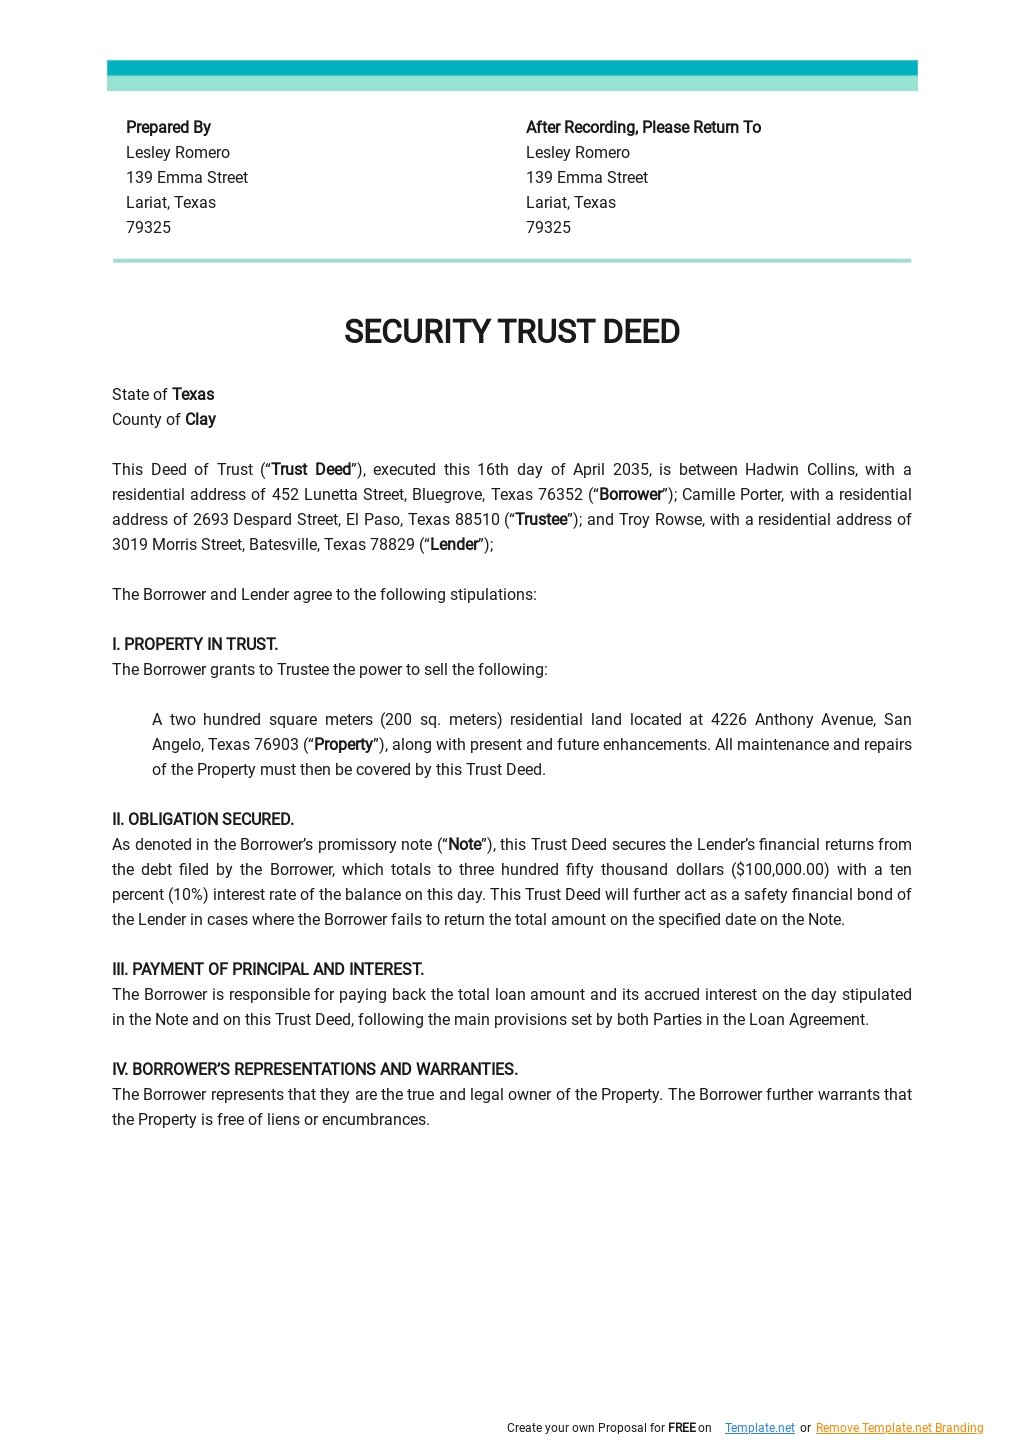 Security Trust Deed Template 